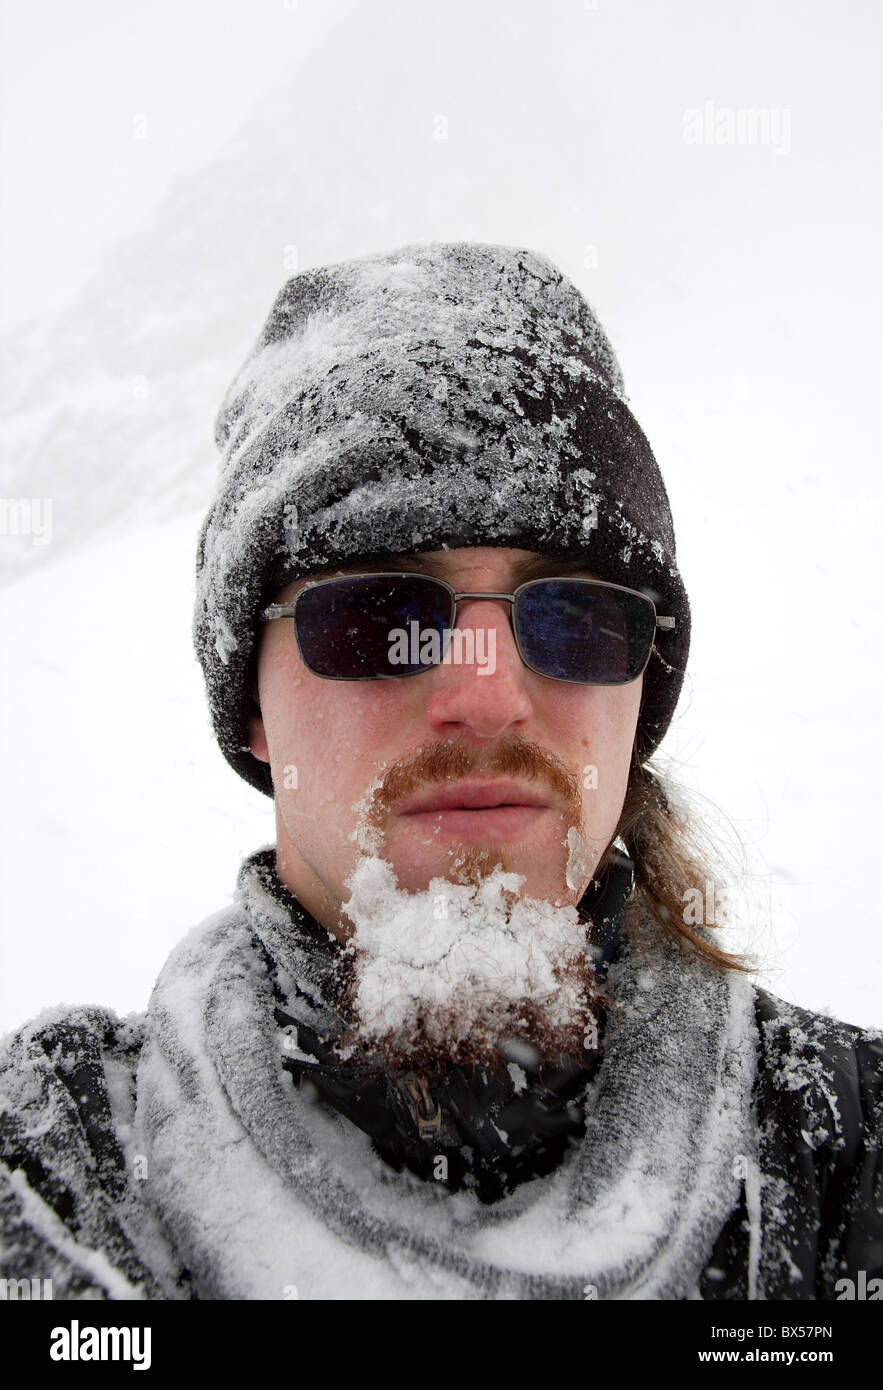 Porträt eines bärtigen Mannes Covers von Schnee in einem Schneesturm Stockfoto